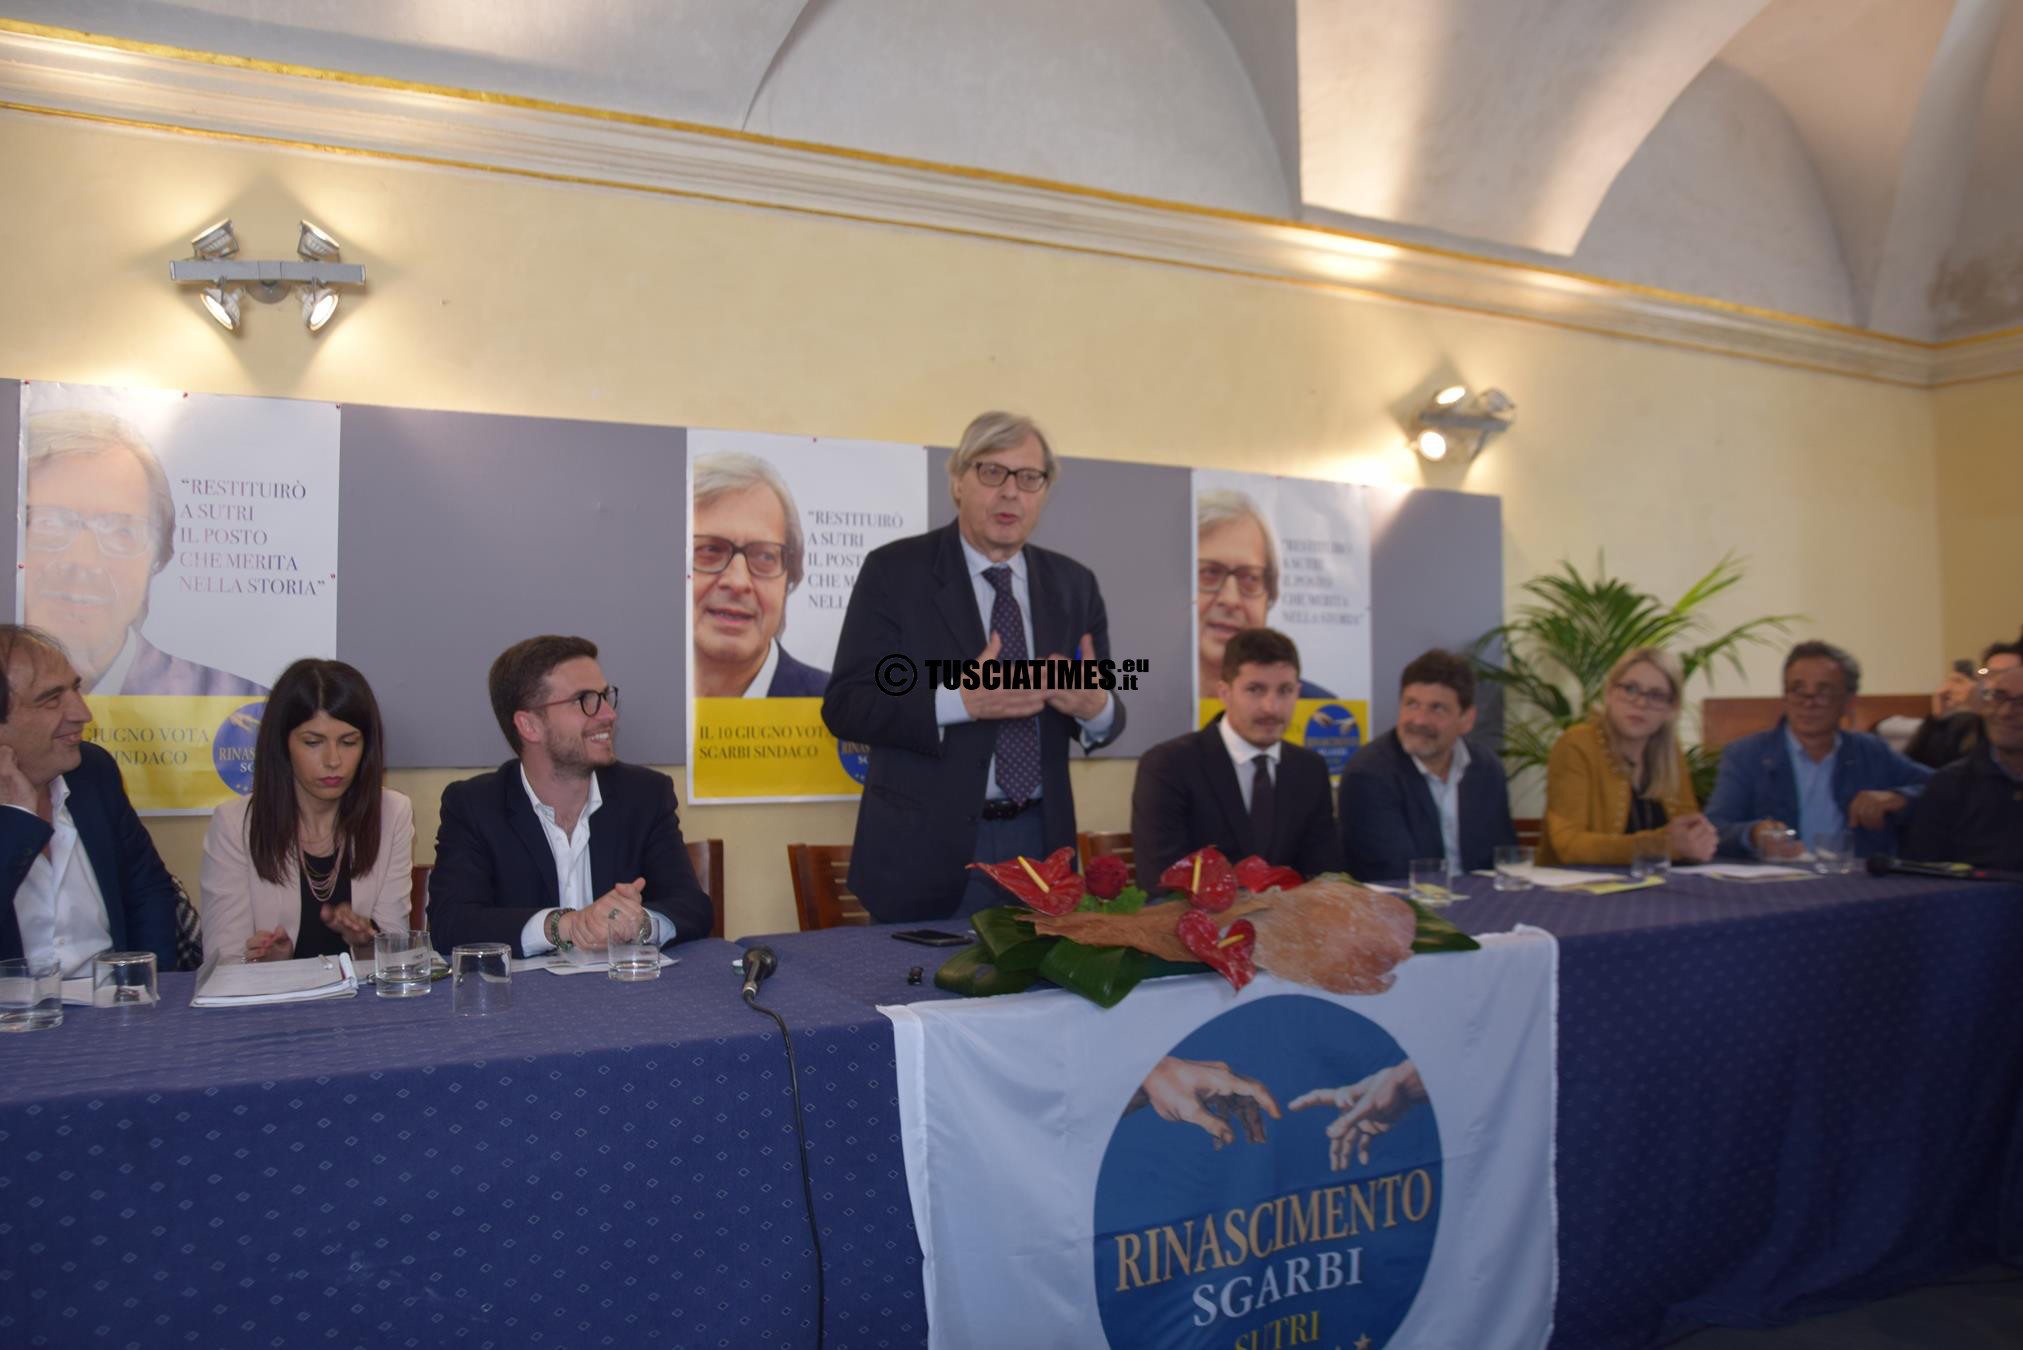 Vittorio Sgarbi candidato sindaco di Sutri, alla presentazione della sua lista "Rinascimento". 